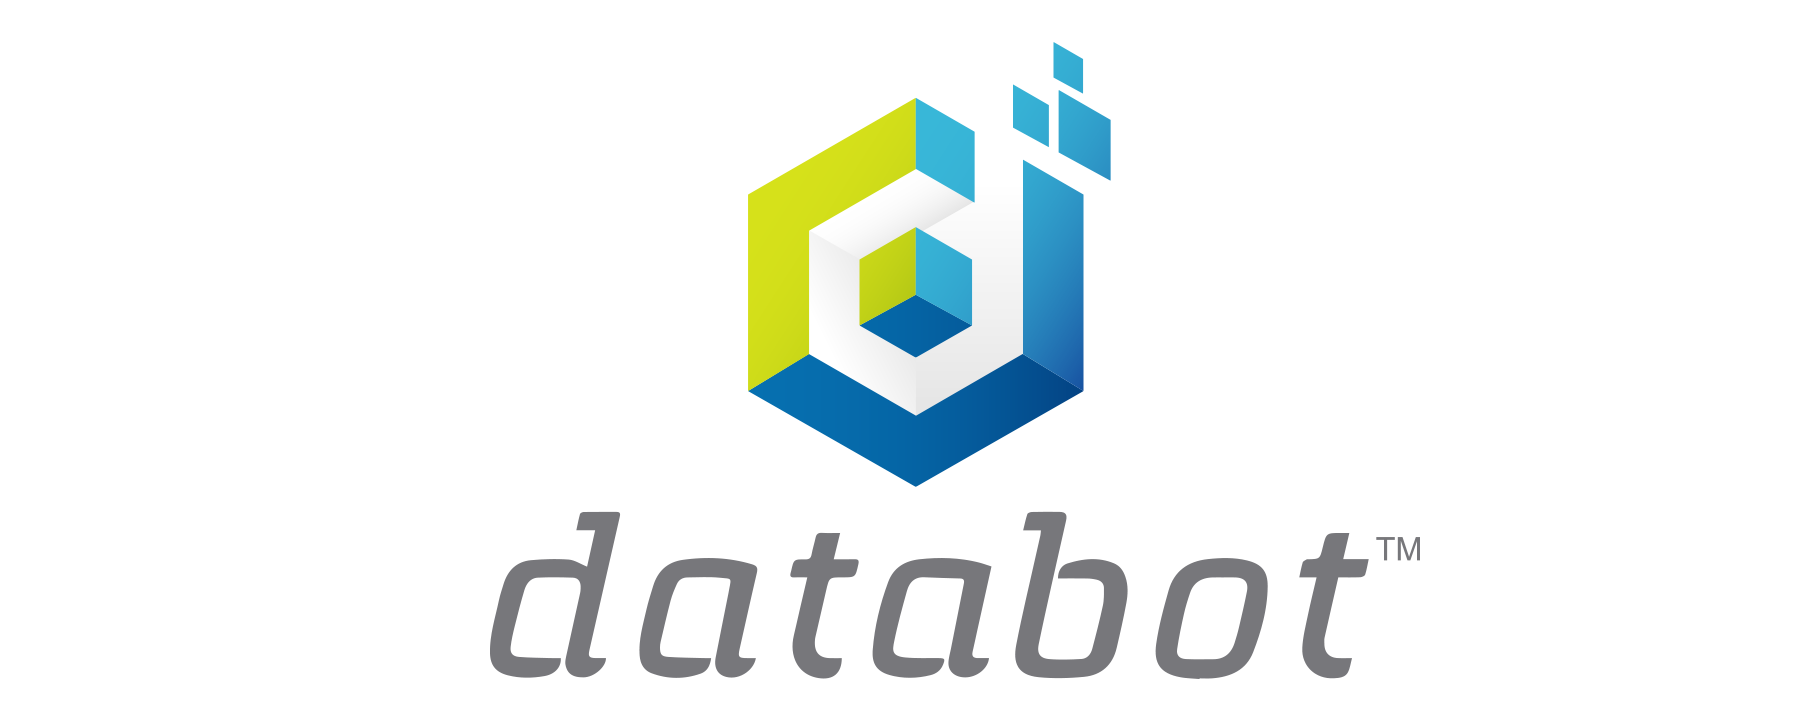 the databot robot logo